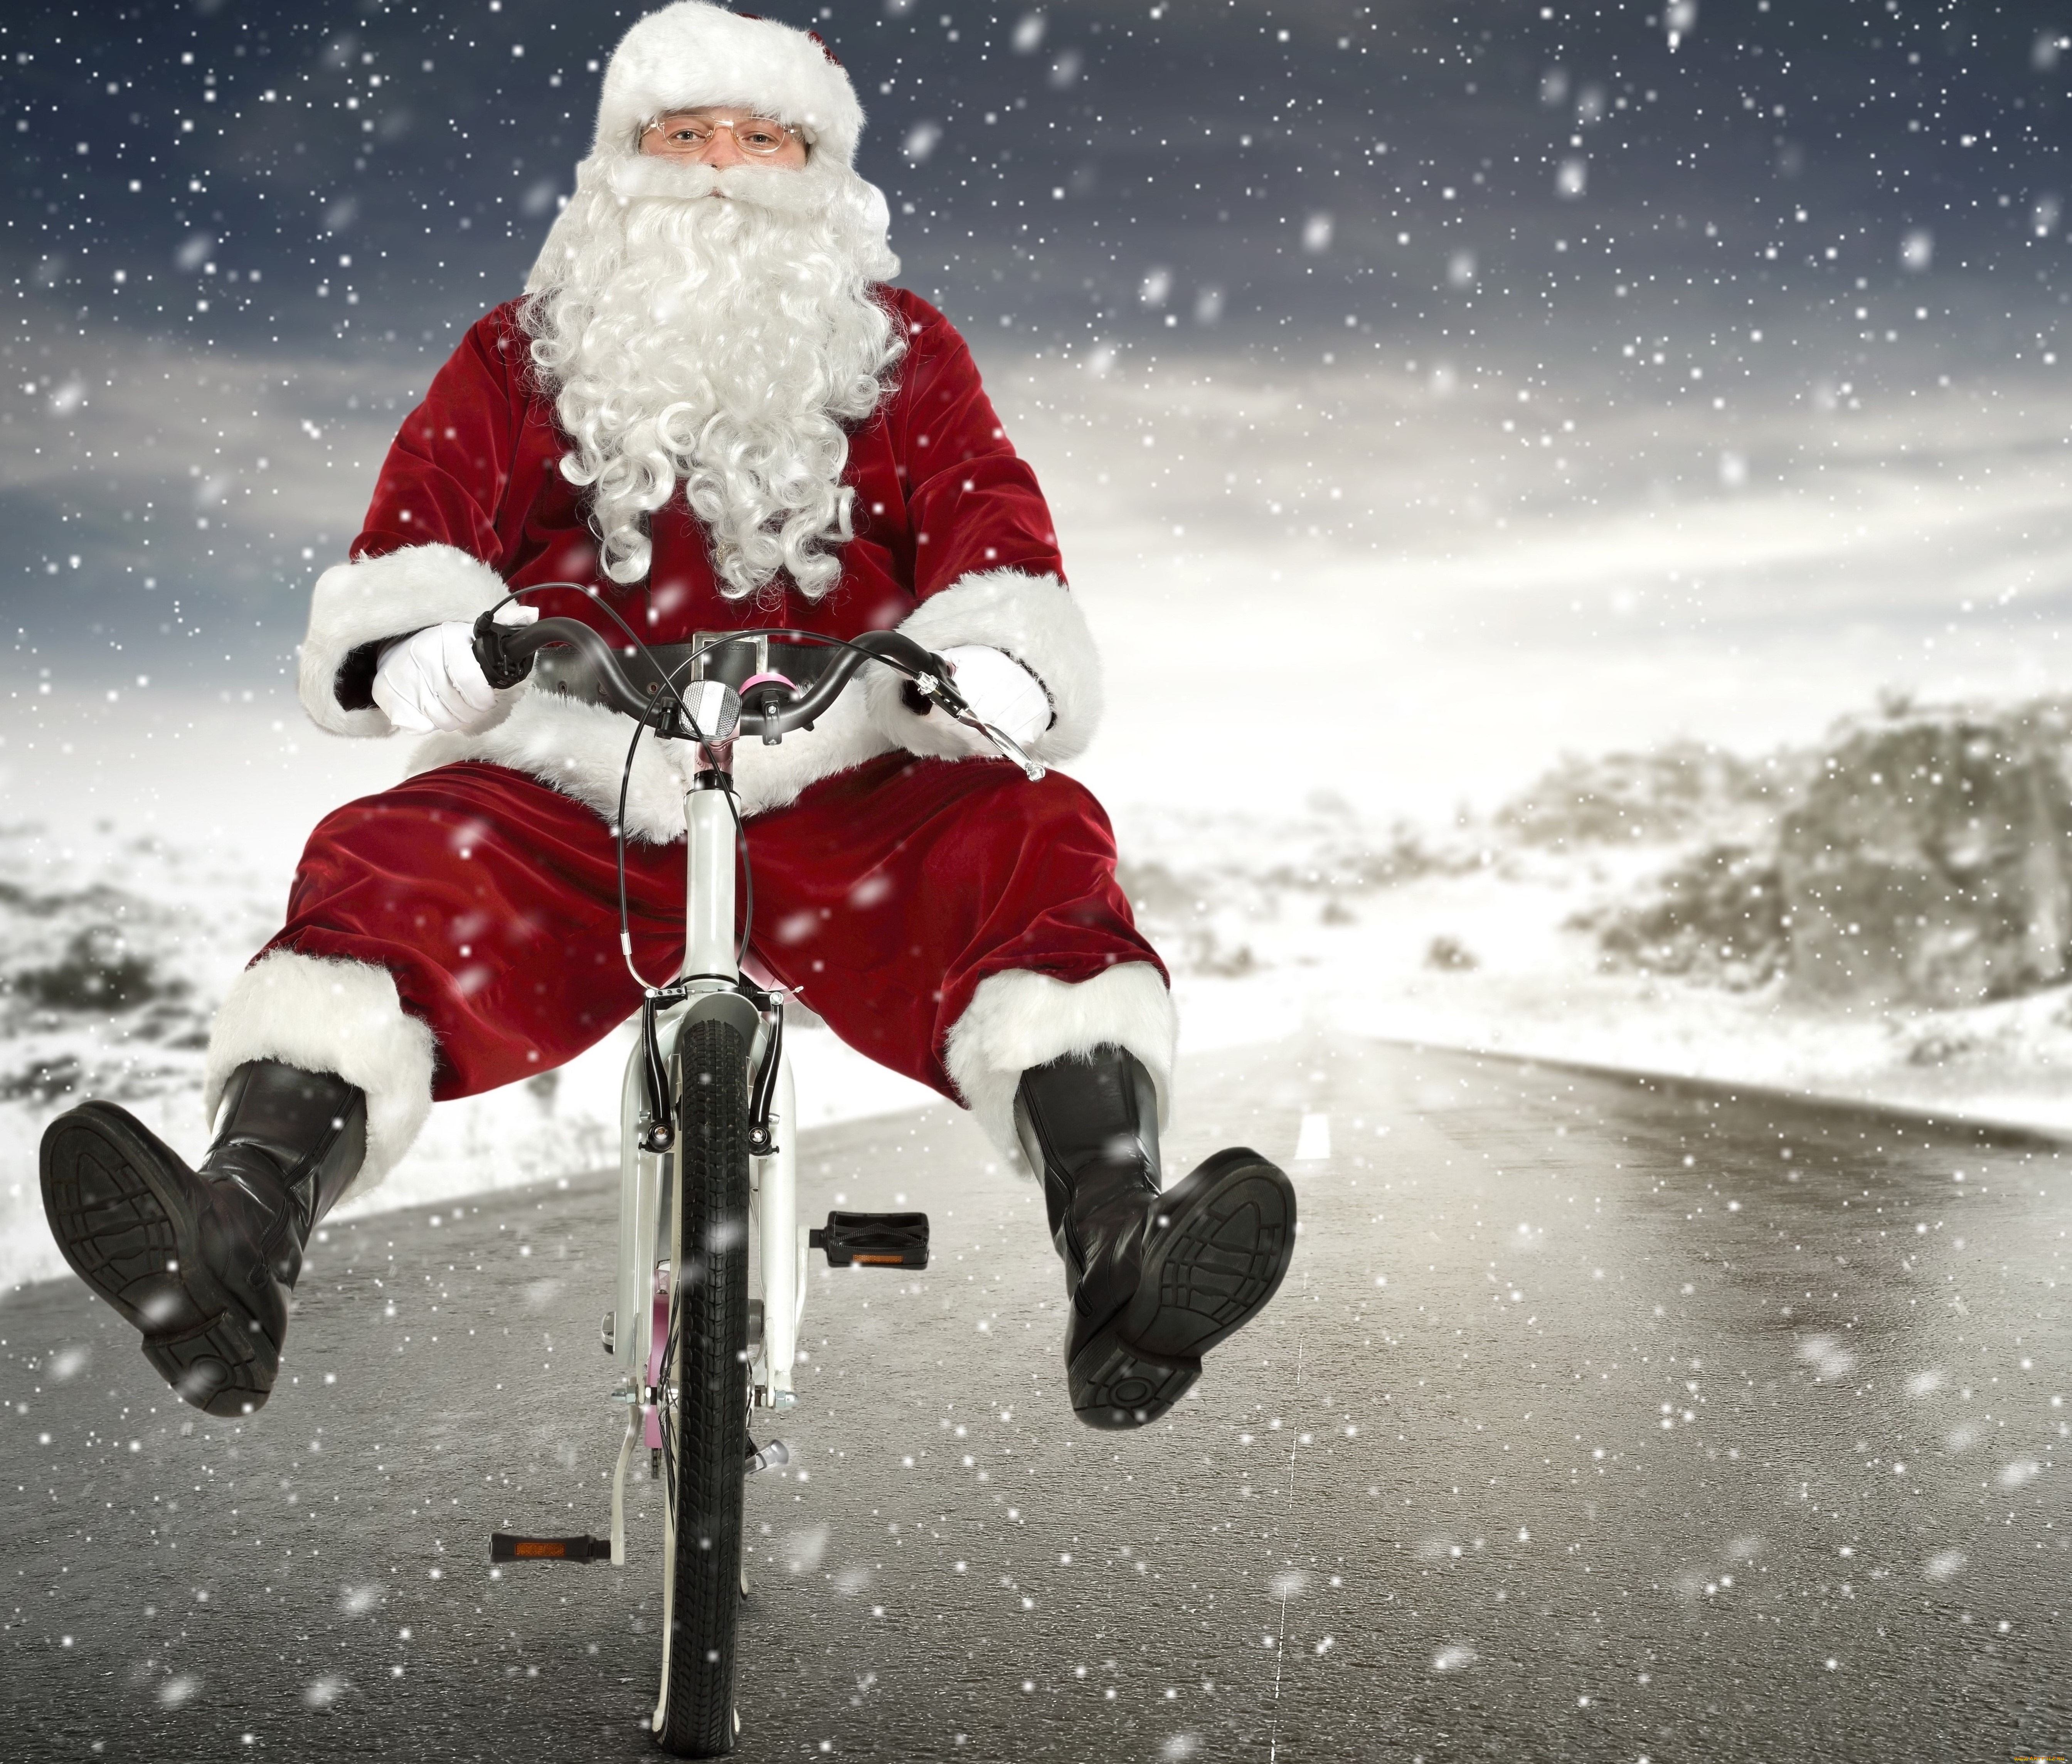 праздничные, дед, мороз, , санта, клаус, снег, сапоги, красная, шапка, рождество, новый, год, велосипед, борода, праздник, зима, дорога, шуба, снежинки, перчатки, дед, мороз